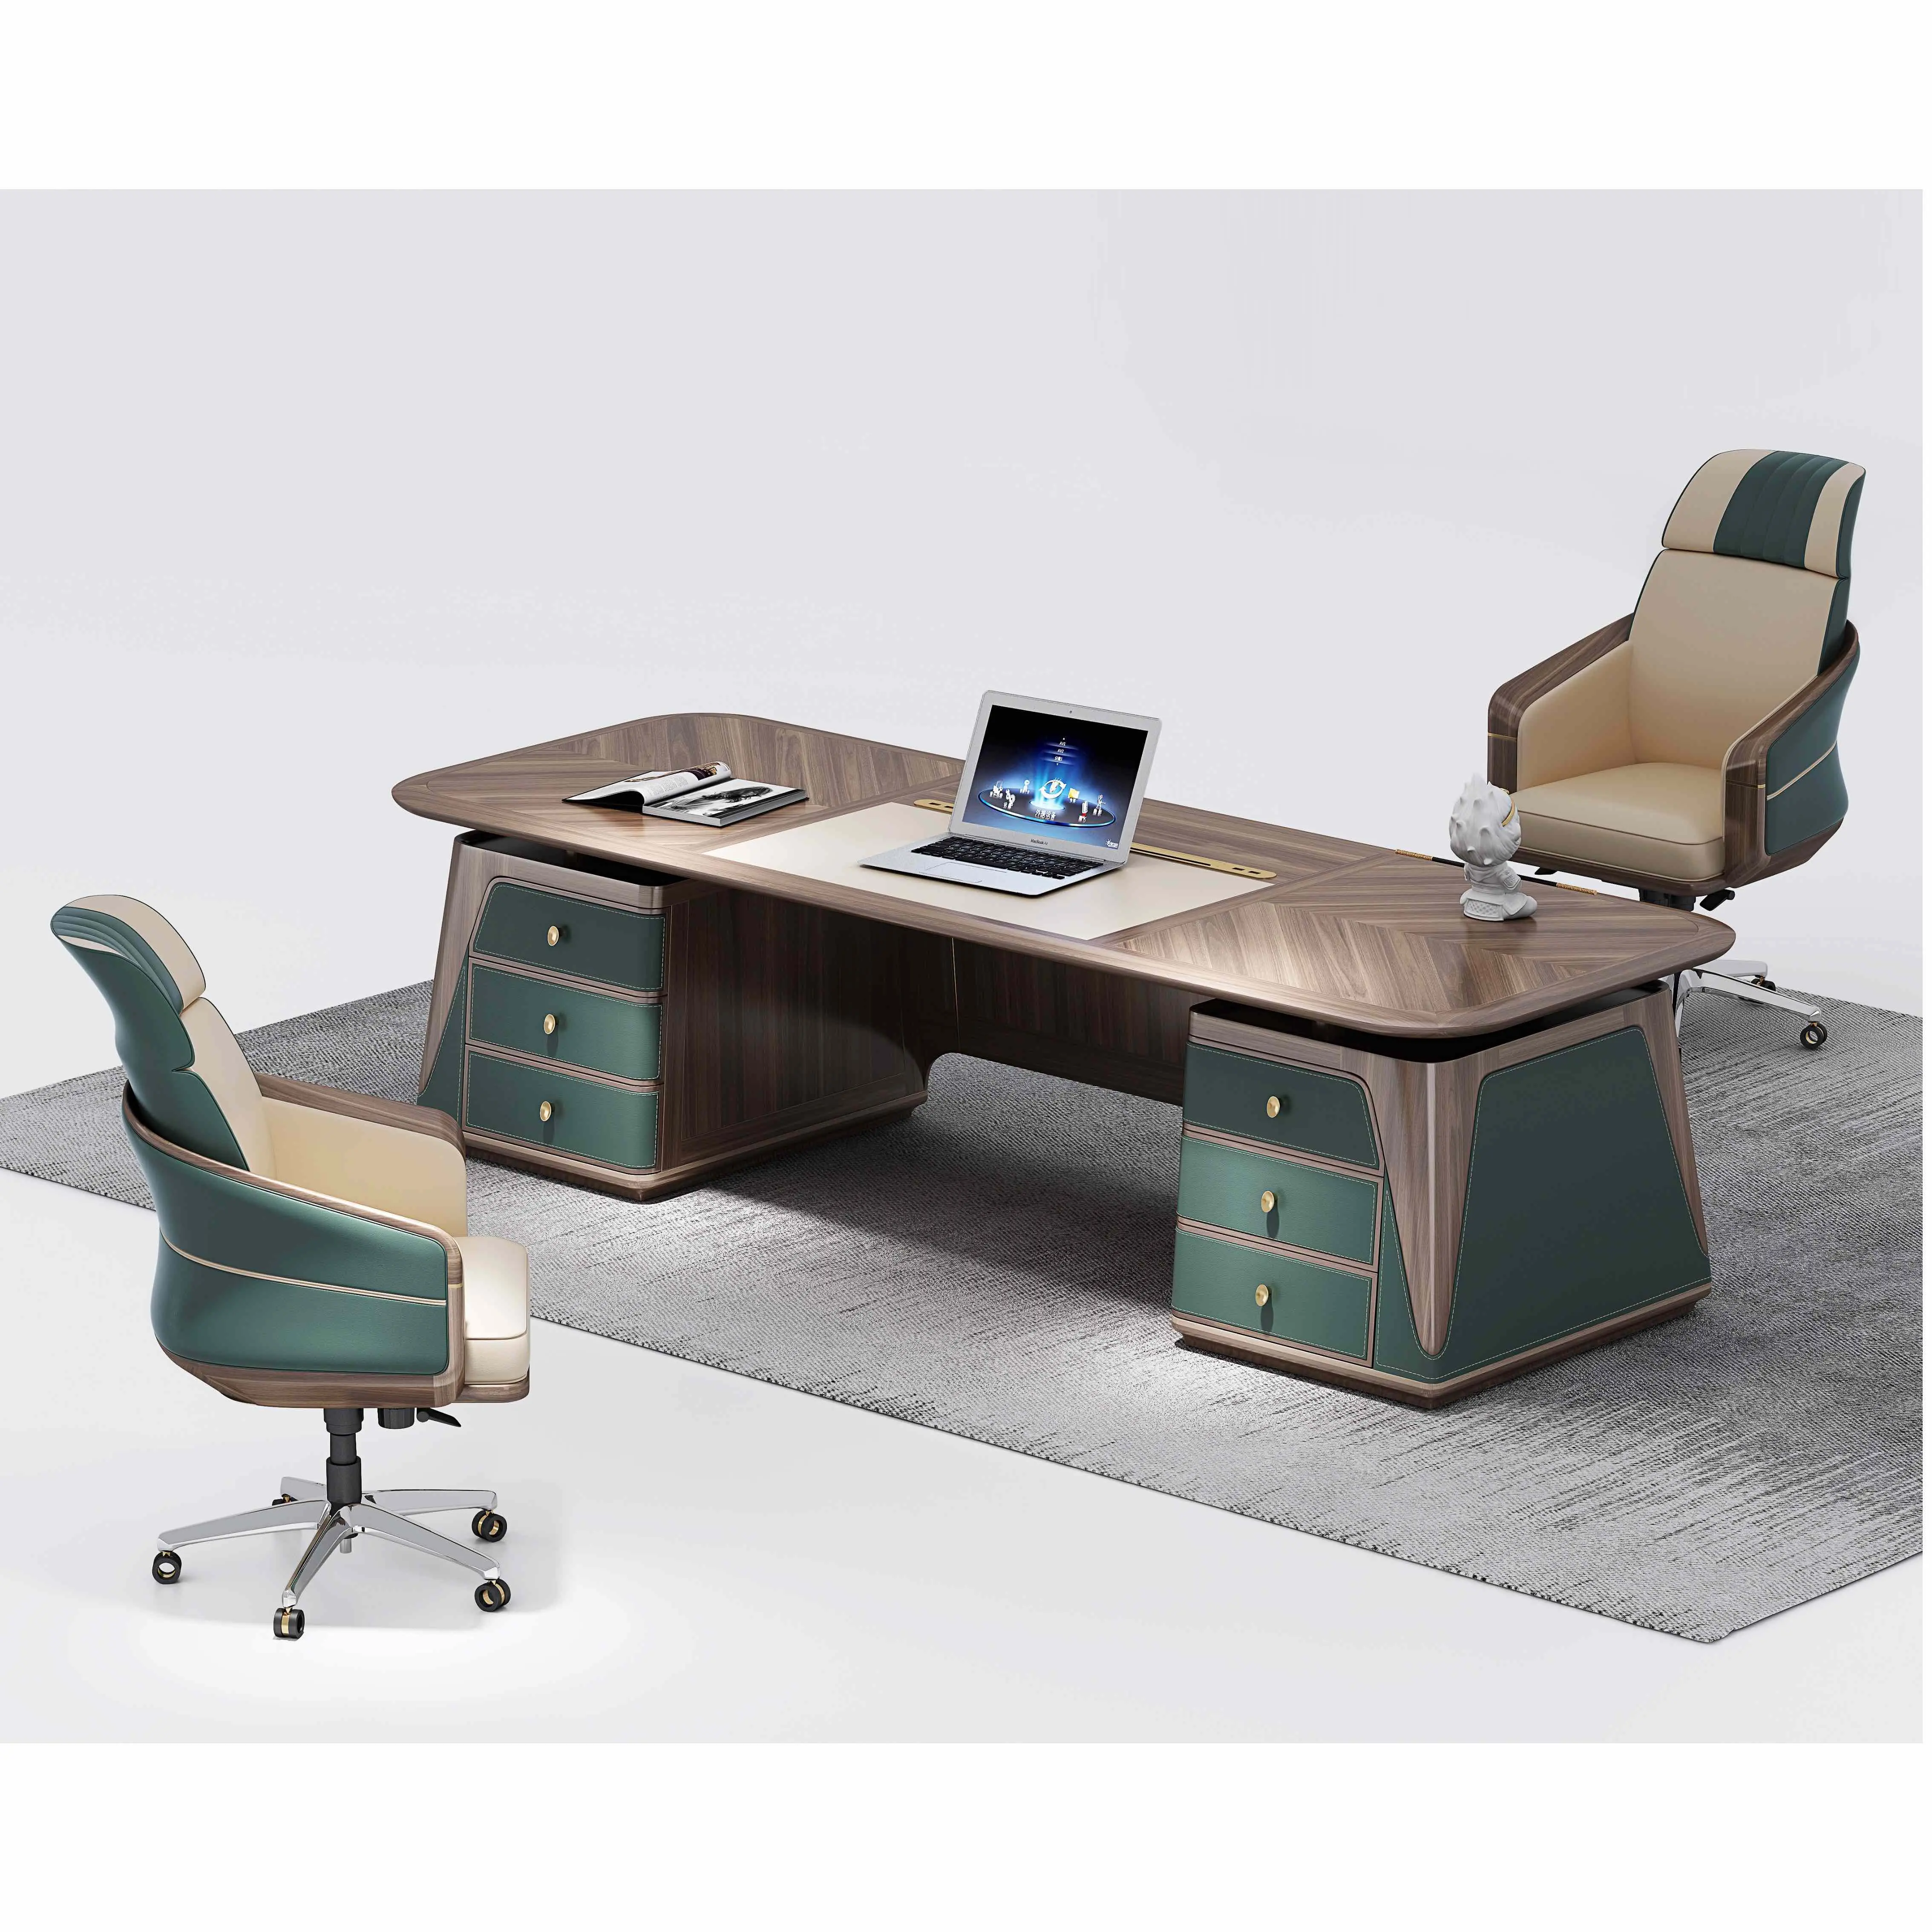 Meja Kayu Berat Rumah Kantor Meja Komputer Meja dengan 3 Laci Satu Tempat Duduk Meja Kantor Meja Manajer